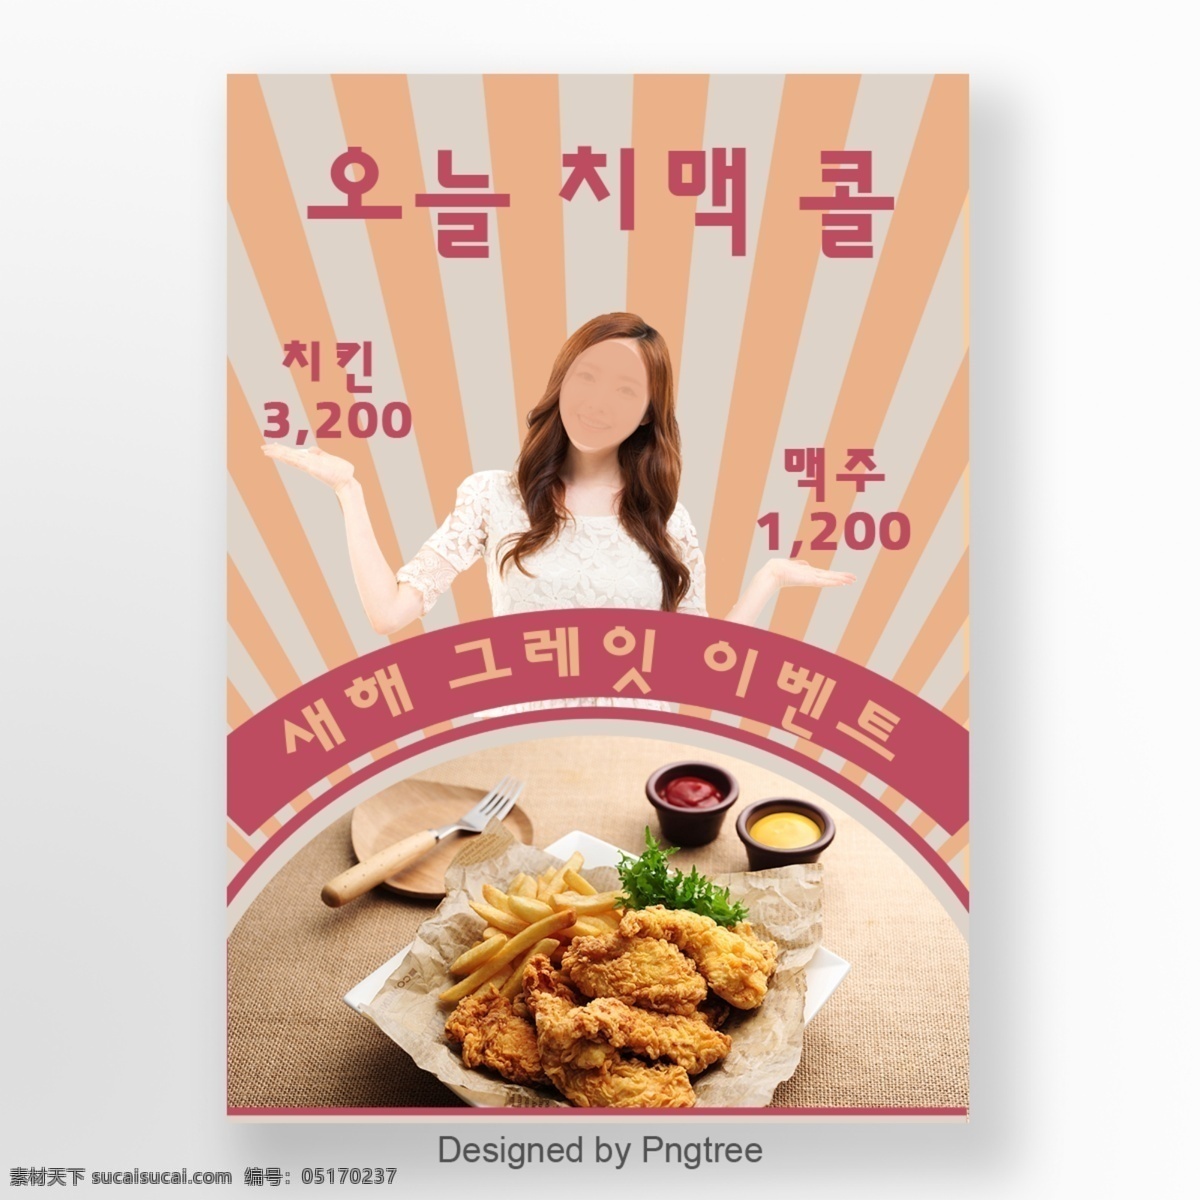 美国 宣传海报 特点 背景 数字 边缘 品味的回忆 打折促销 海报 韩国 的价值